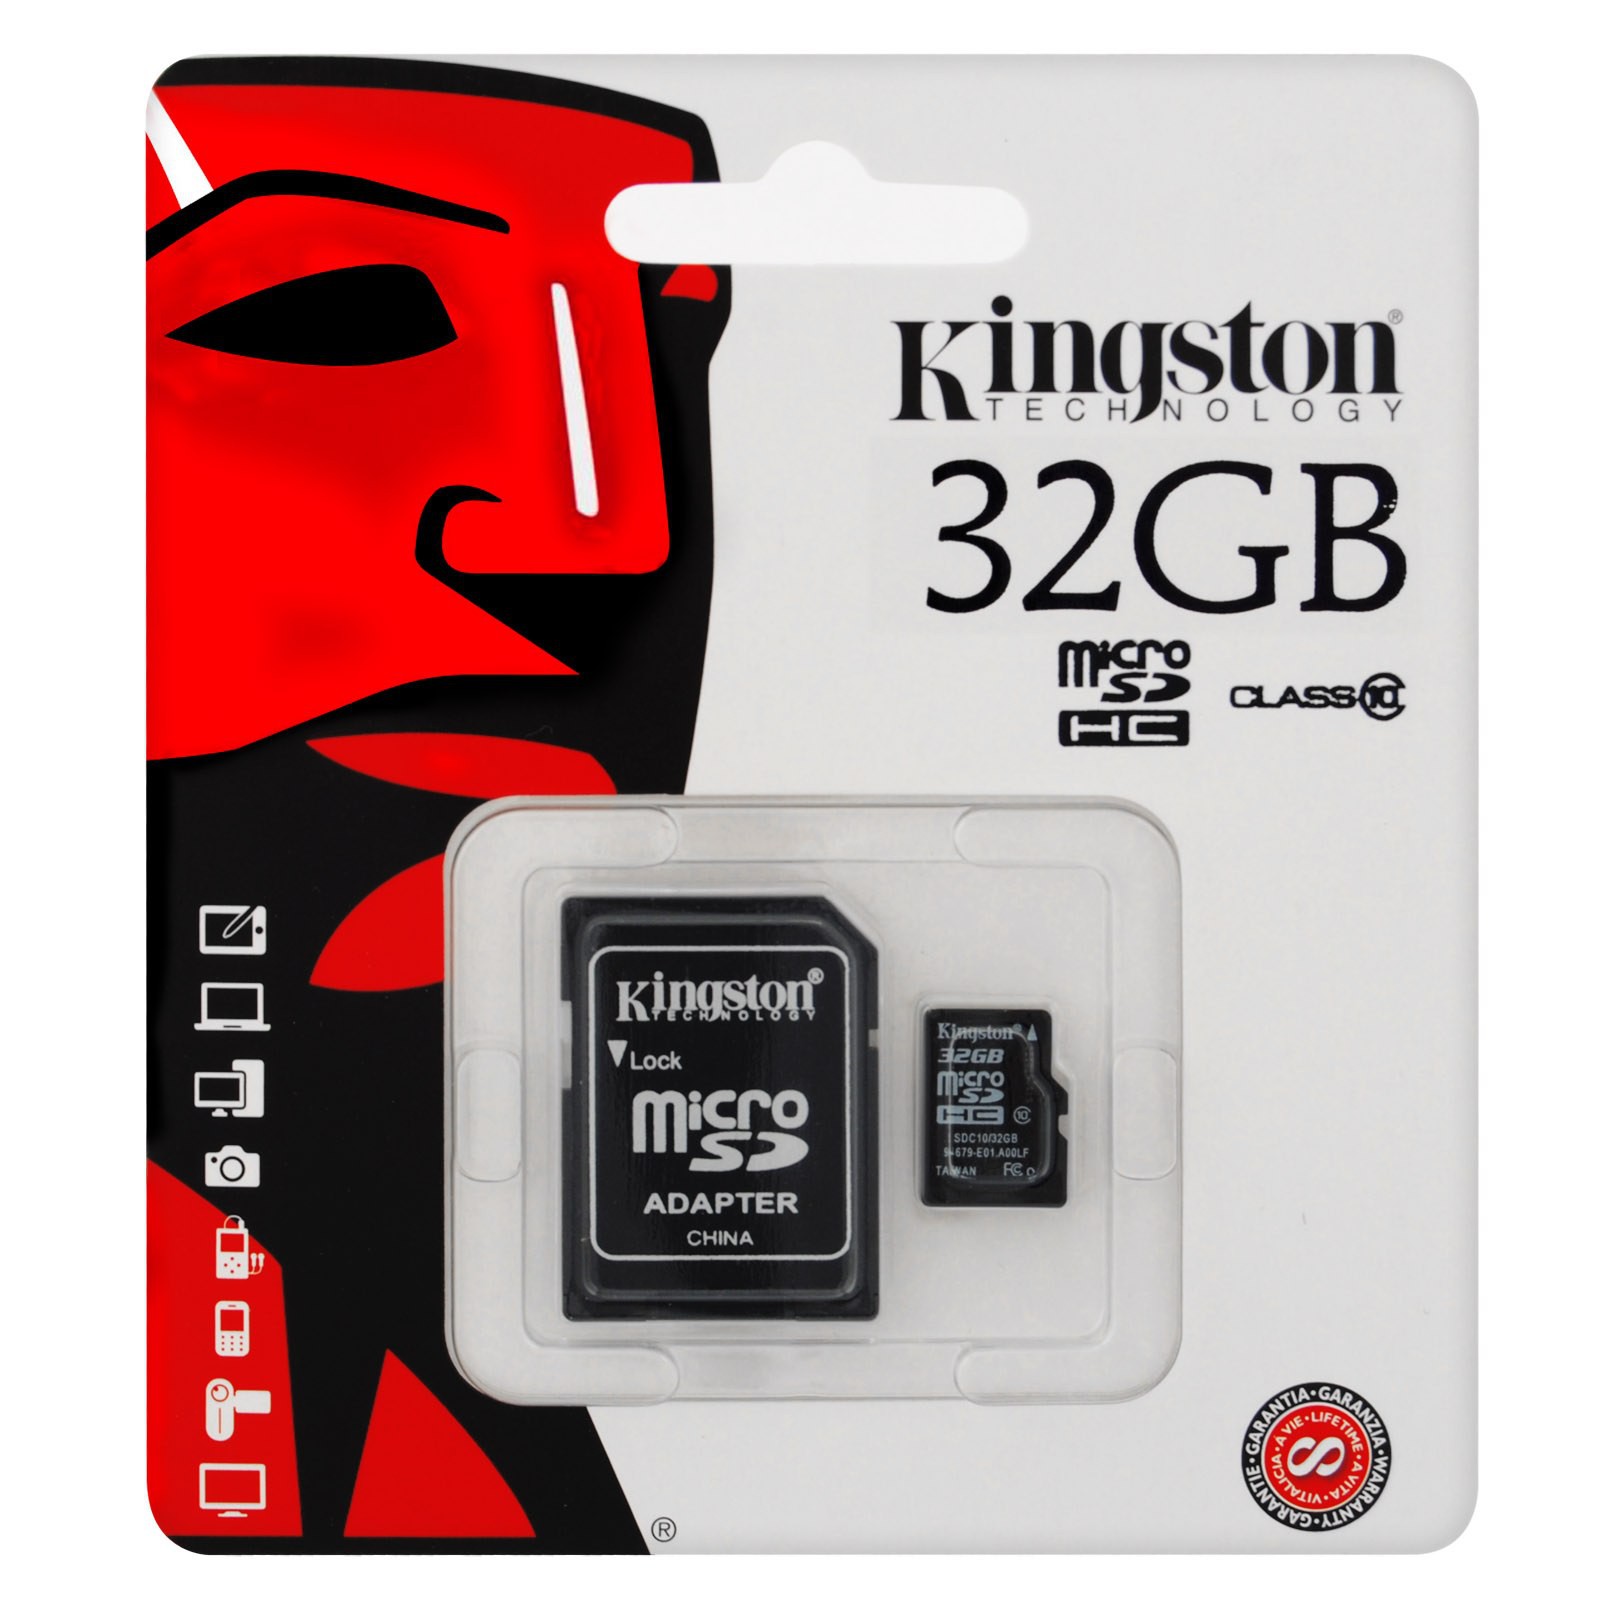 Kingston Micro Sd 32gb Classe 10 Class Microsd Sdhc Scheda Di Memoria Card Area Illumina 8020